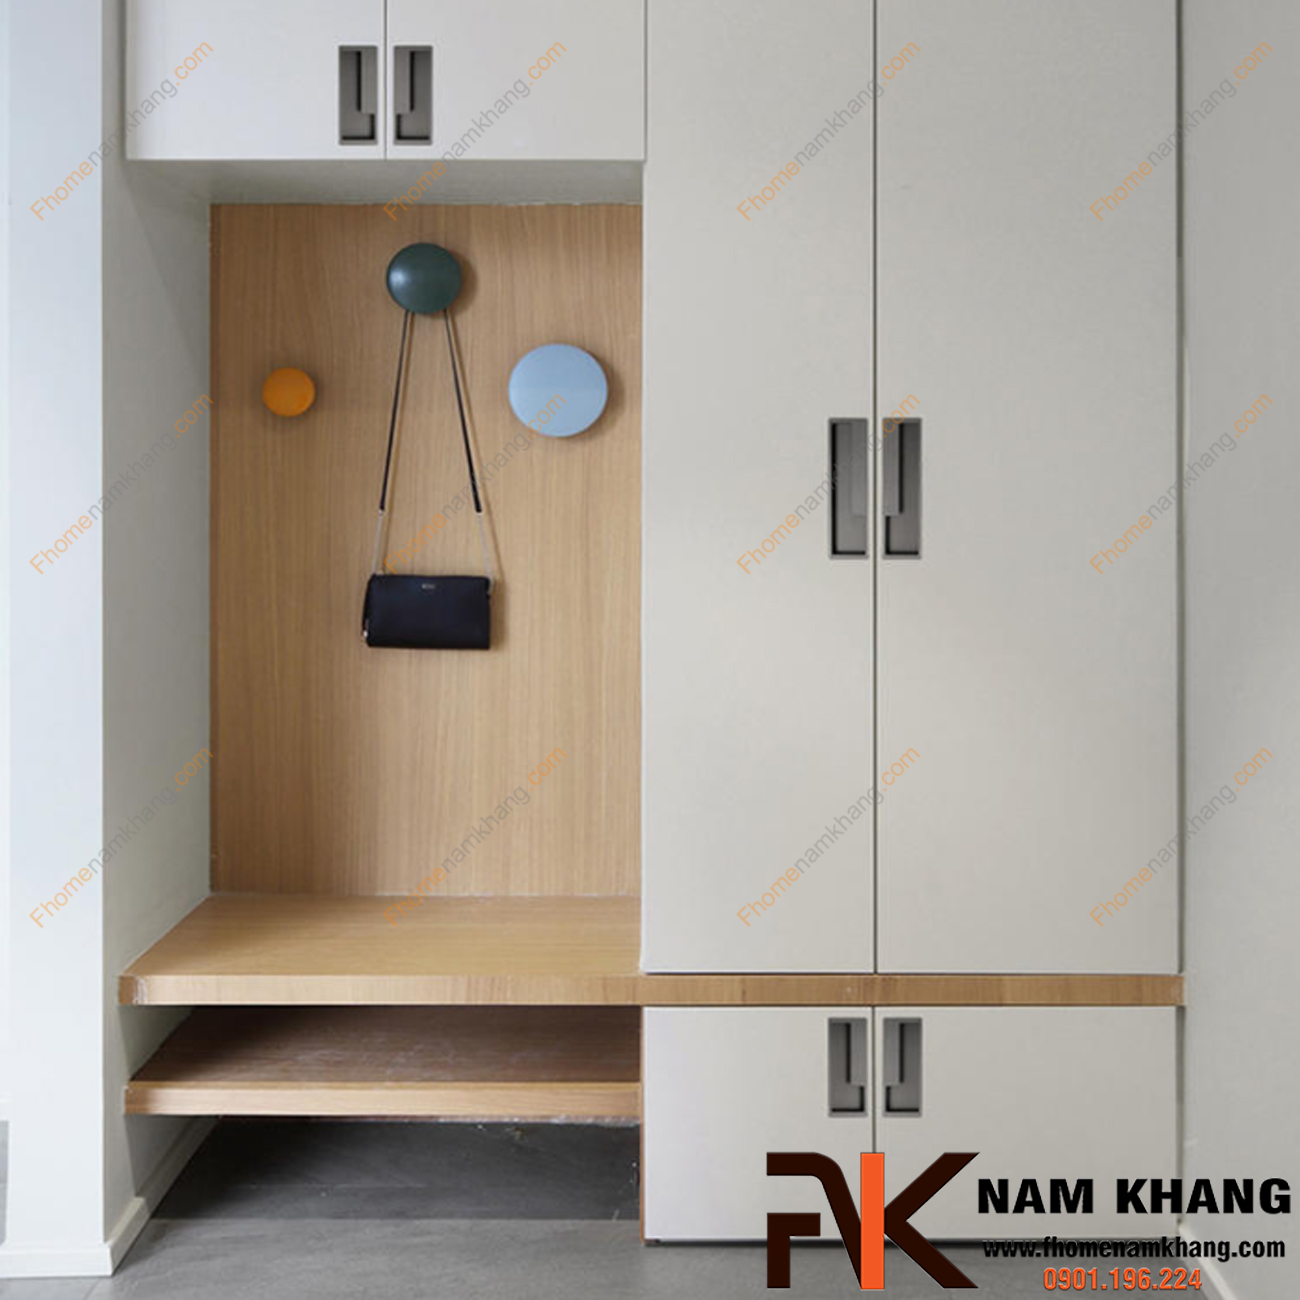 Trong bài viết này, hãy cùng F-Home NamKhang khám phá sức hấp dẫn của tay nắm tủ cao cấp trong thiết kế nội thất và cách chúng có thể tạo ra sự khác biệt đáng kể trong việc biến đổi bất kỳ không gian nào.